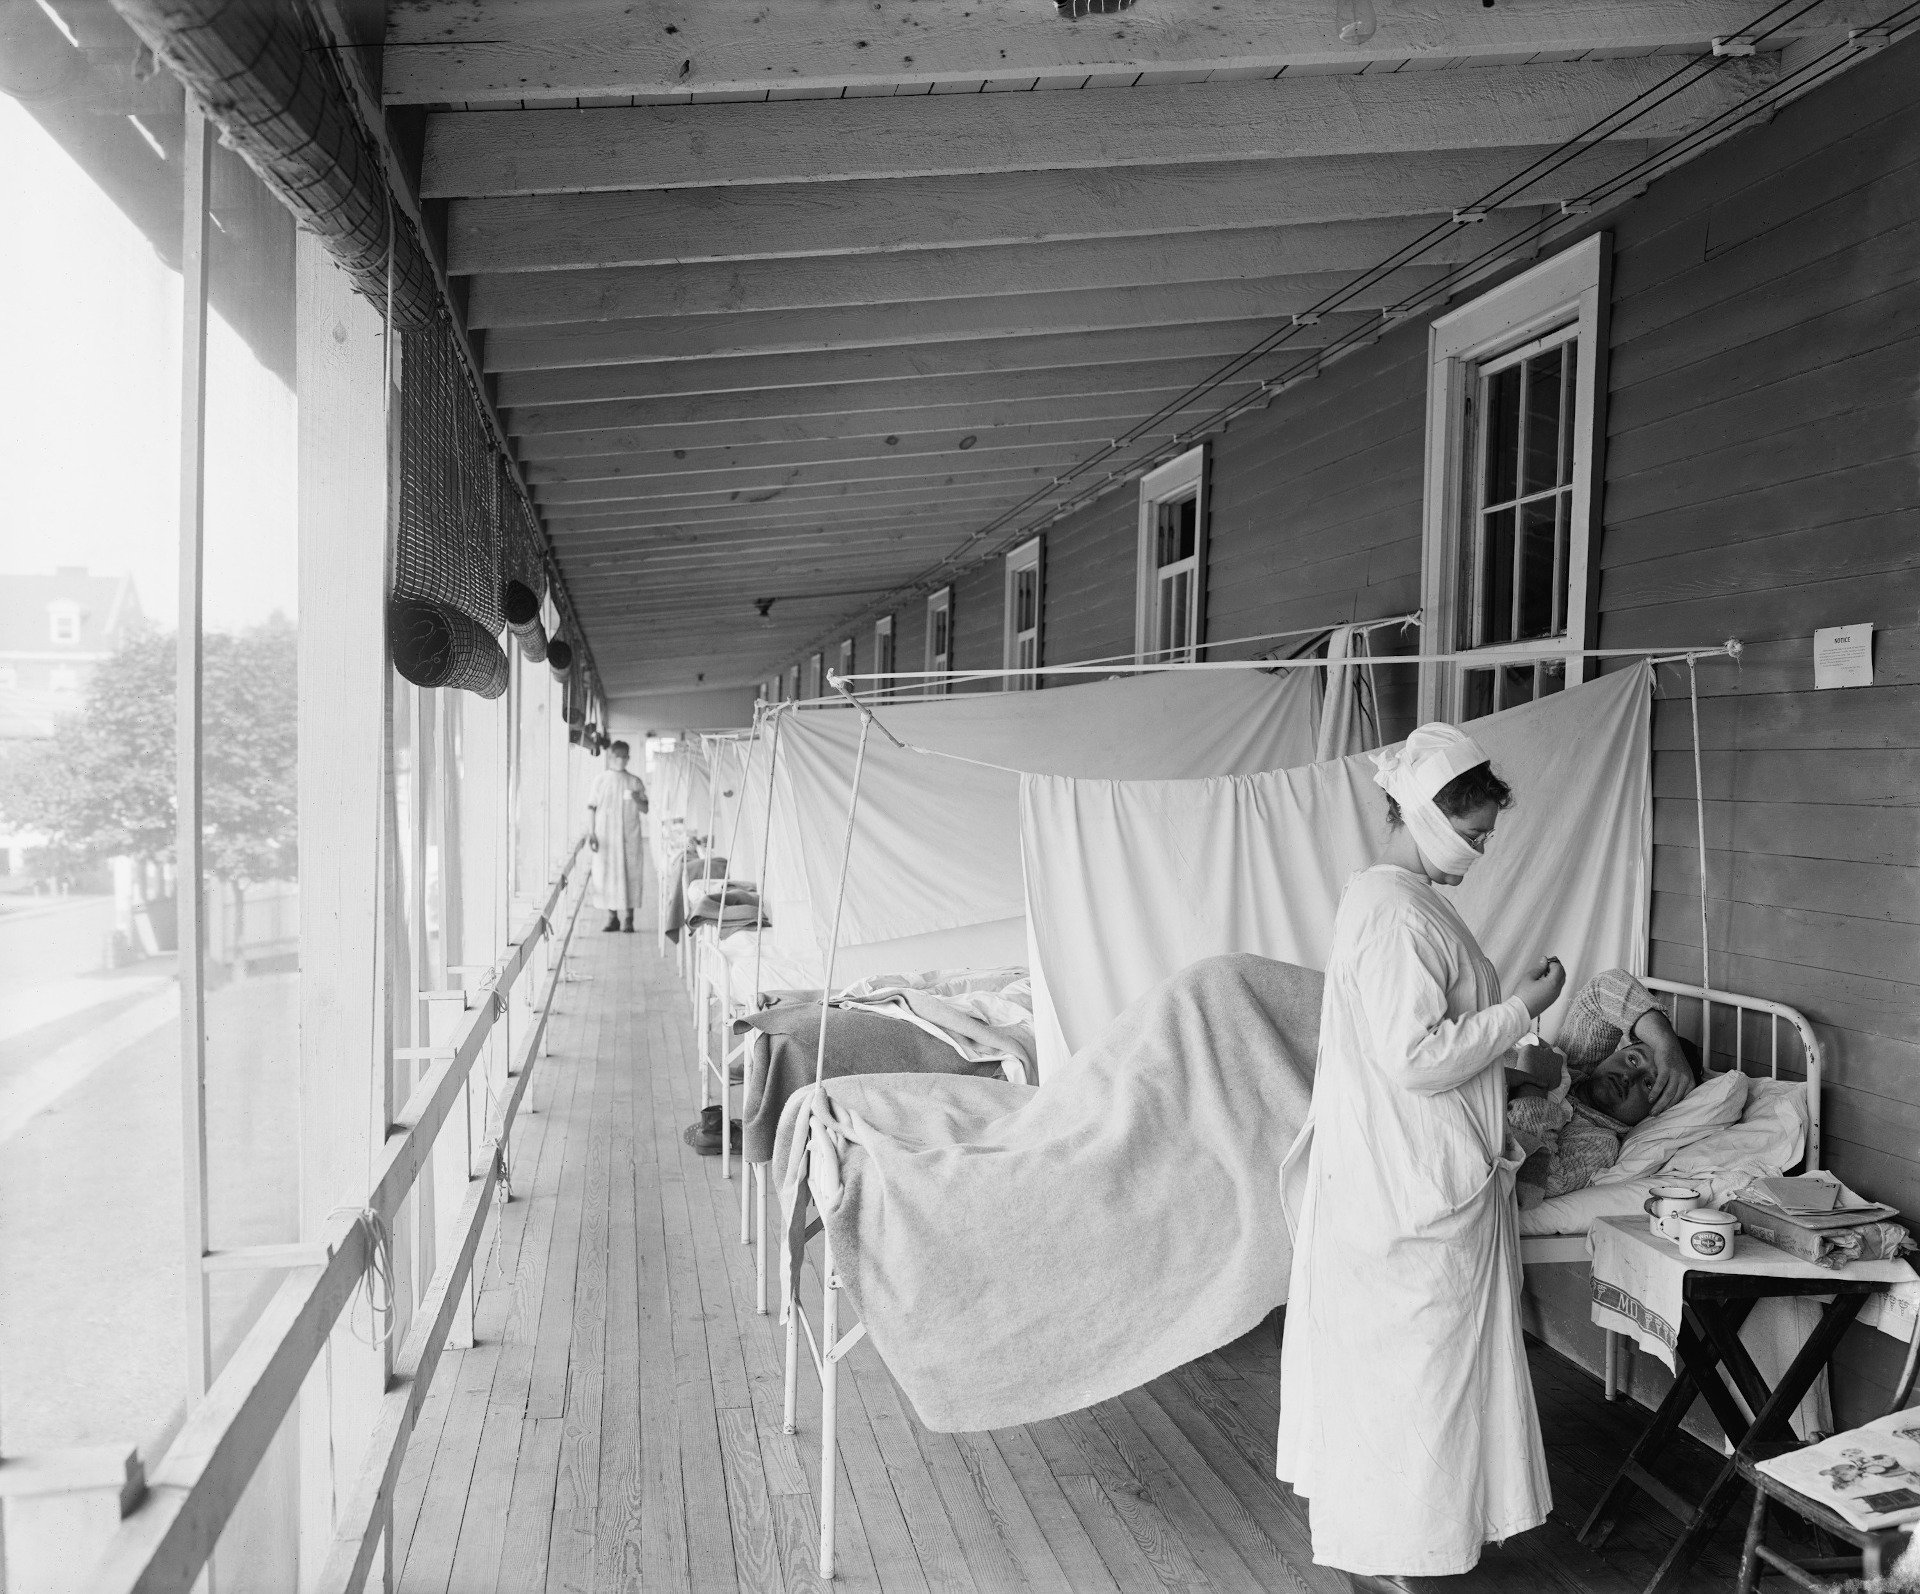 Sala de la gripe del Hospital Walter Reed durante la epidemia de gripe española de 1918-19, en Washington DC. La pandemia causó la muerte de unas 25.000.000 personas en todo el mundo.